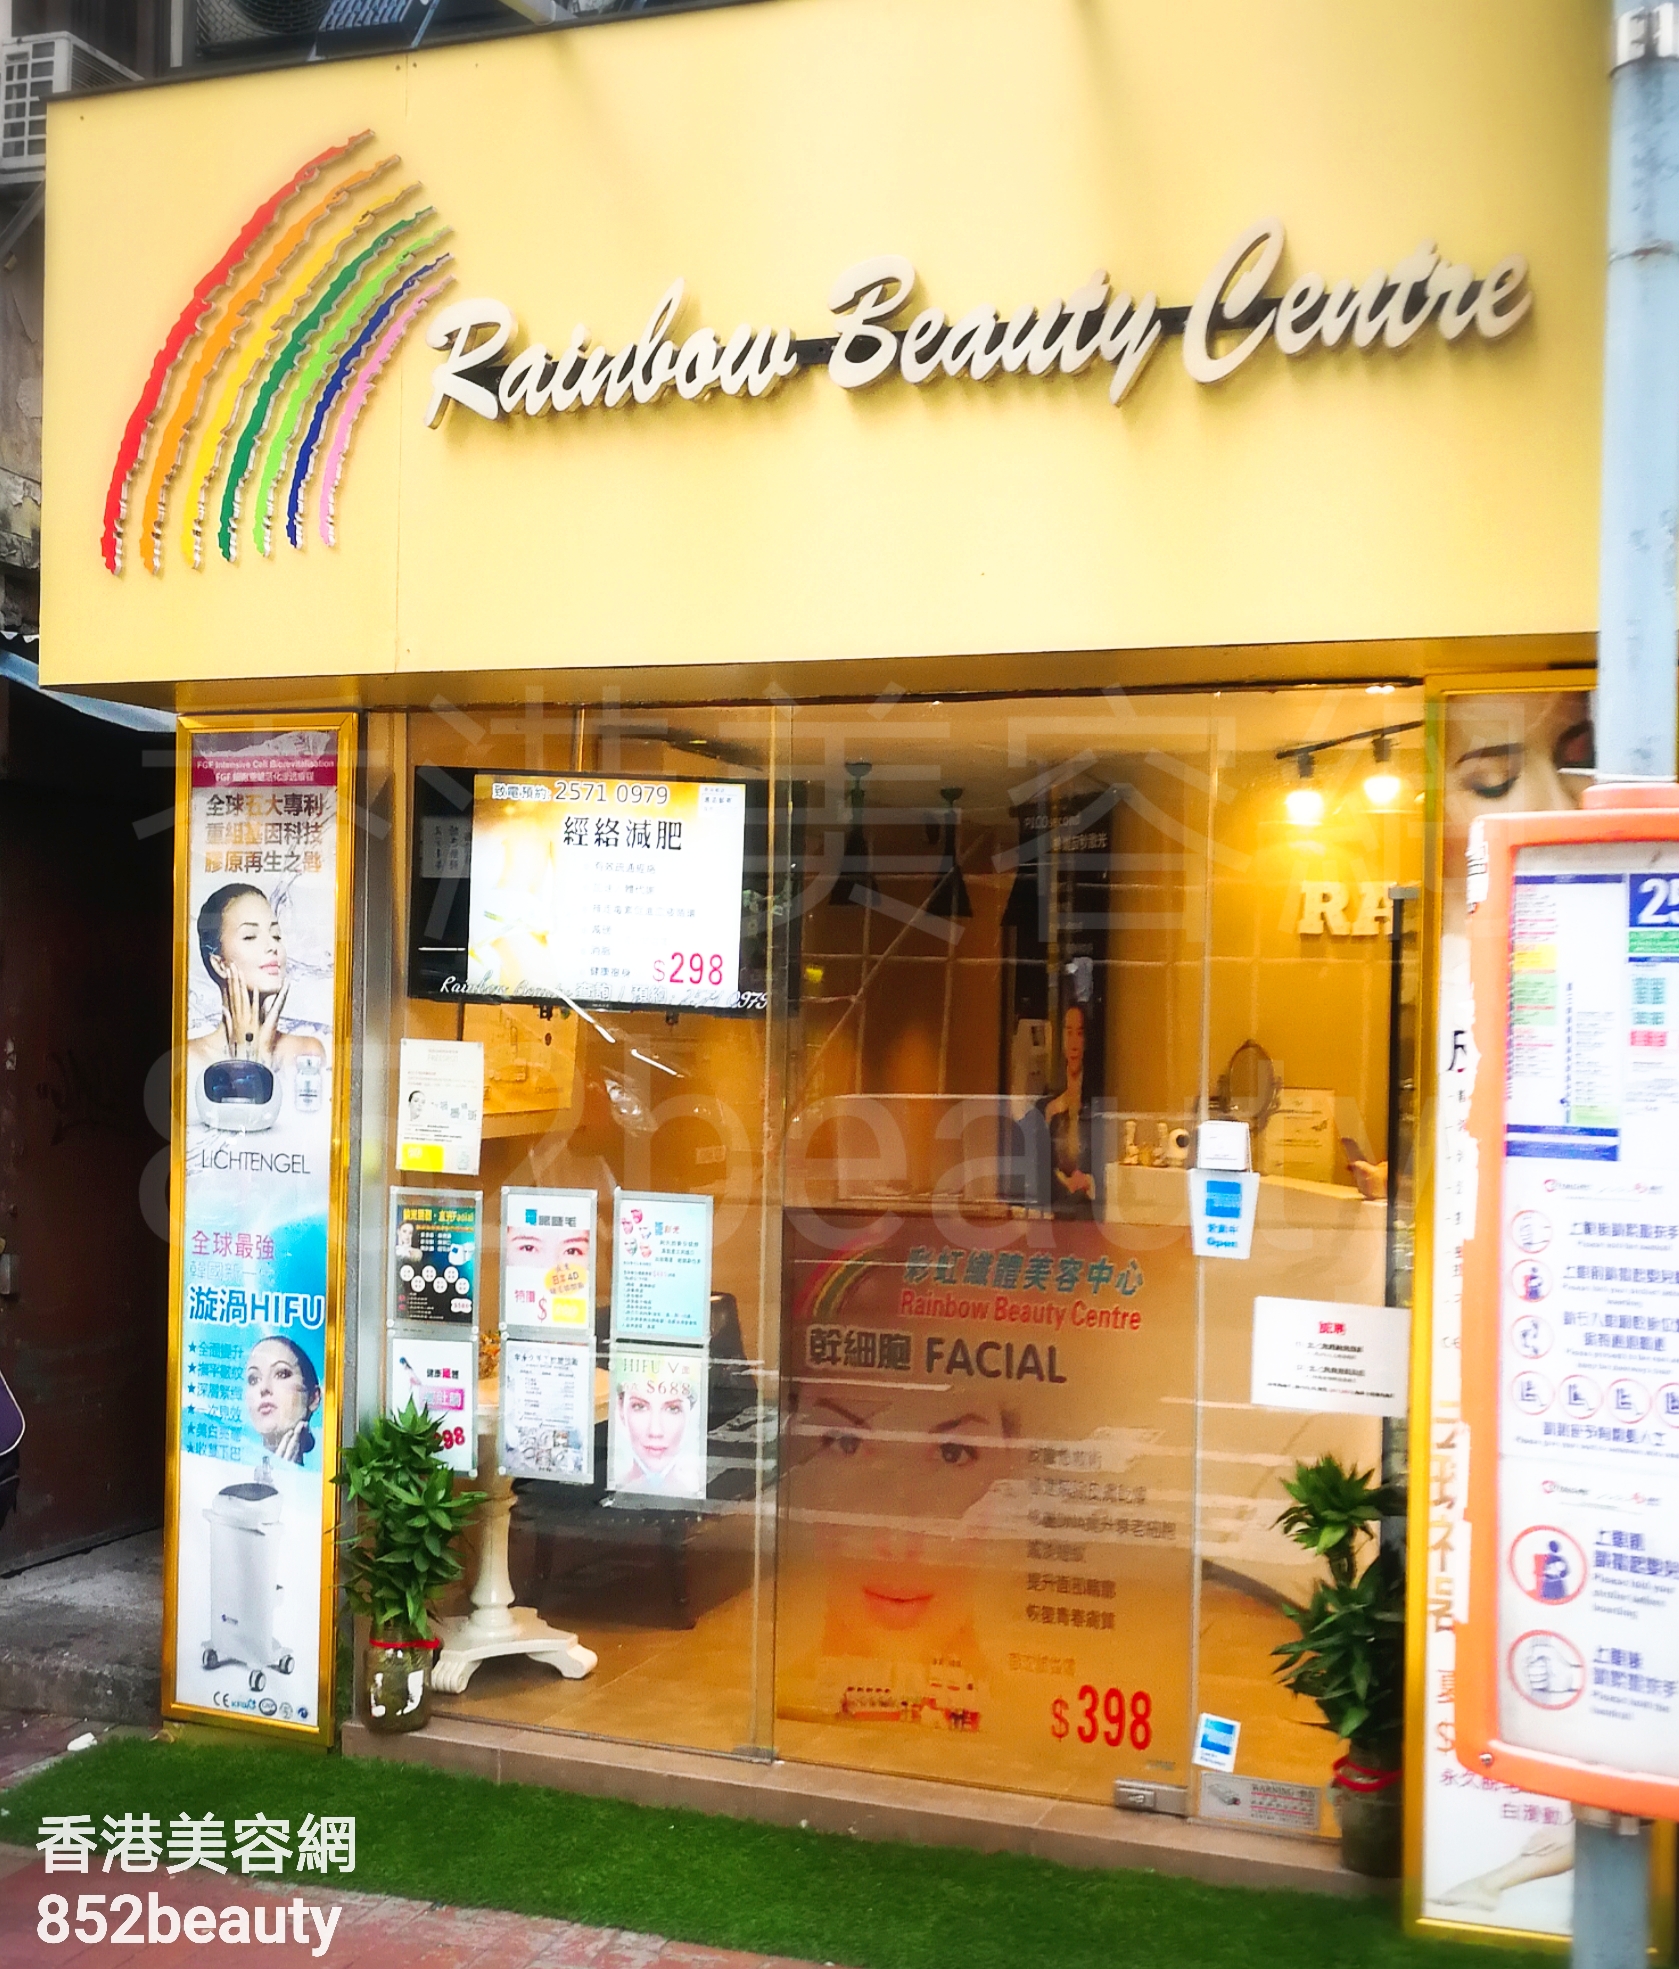 修眉/眼睫毛: Rainbow Beauty Centre